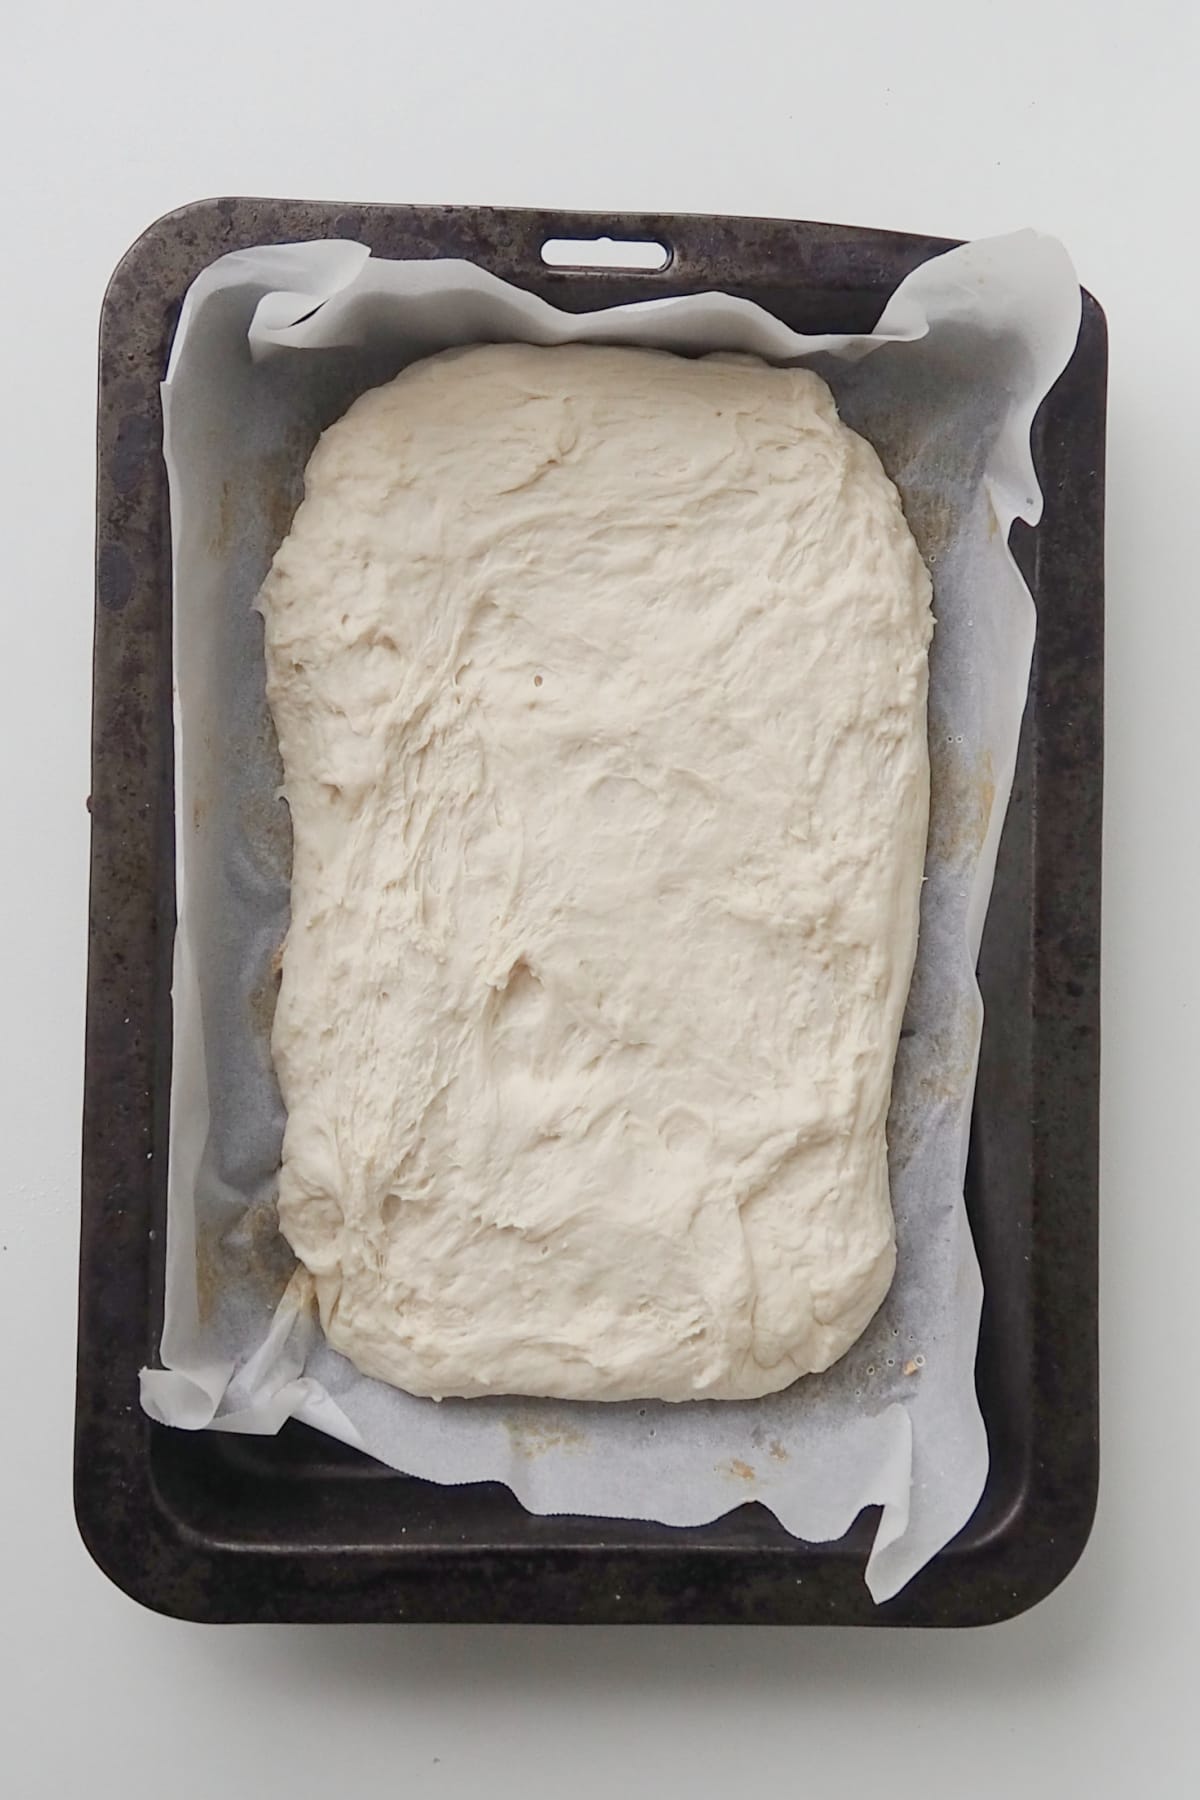 Focaccia dough in a baking tray.